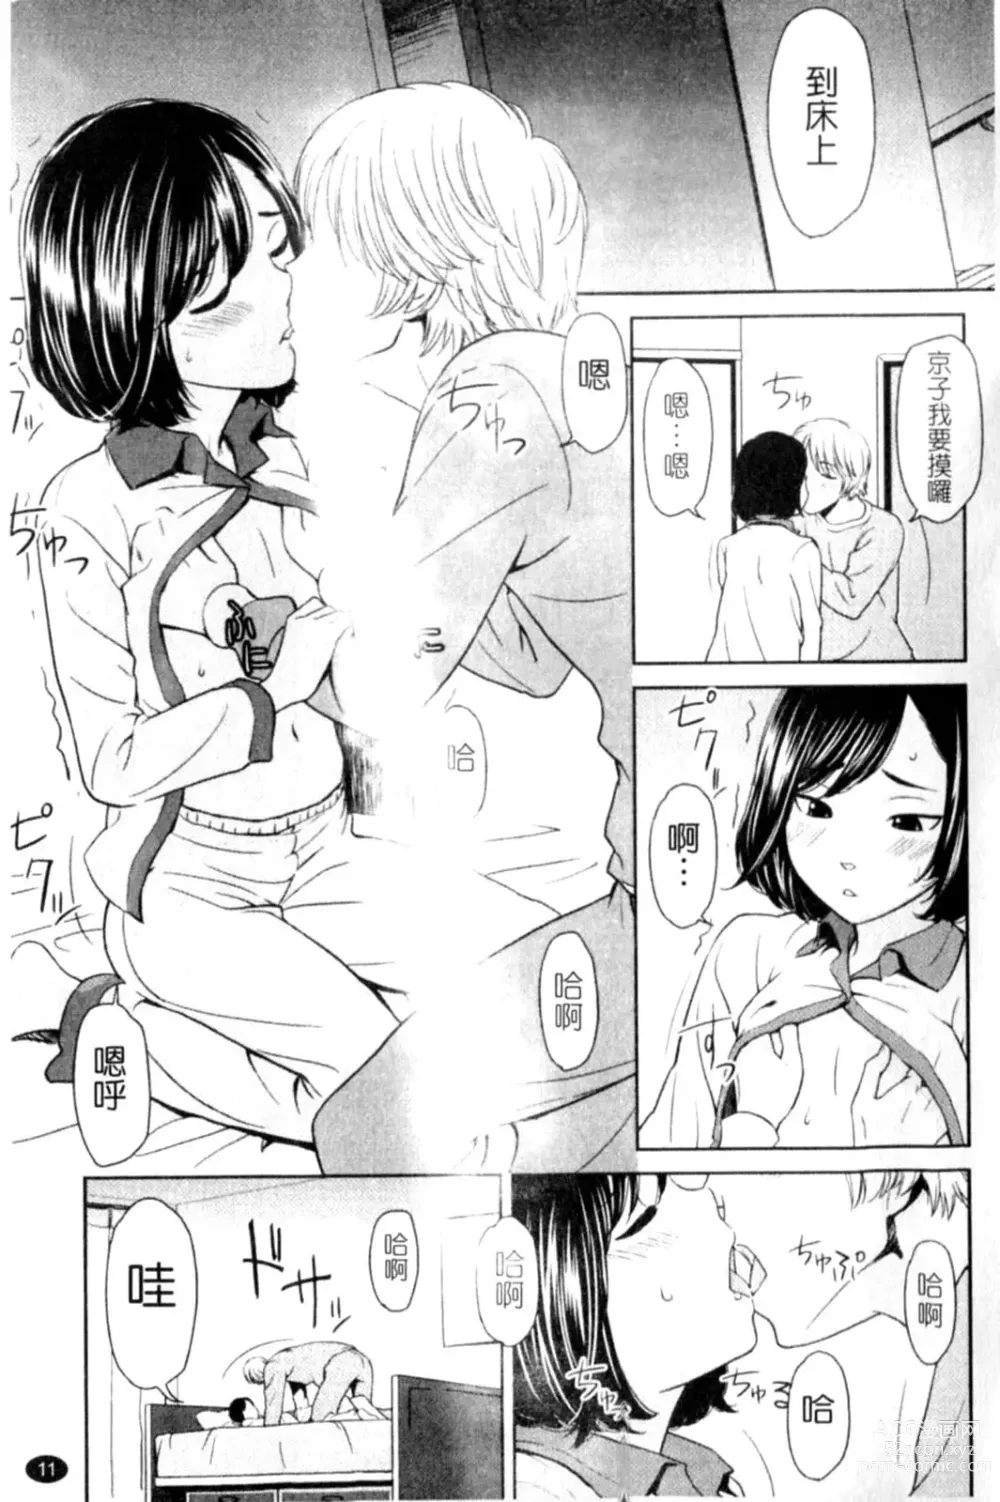 Page 11 of manga Porno Graffitti